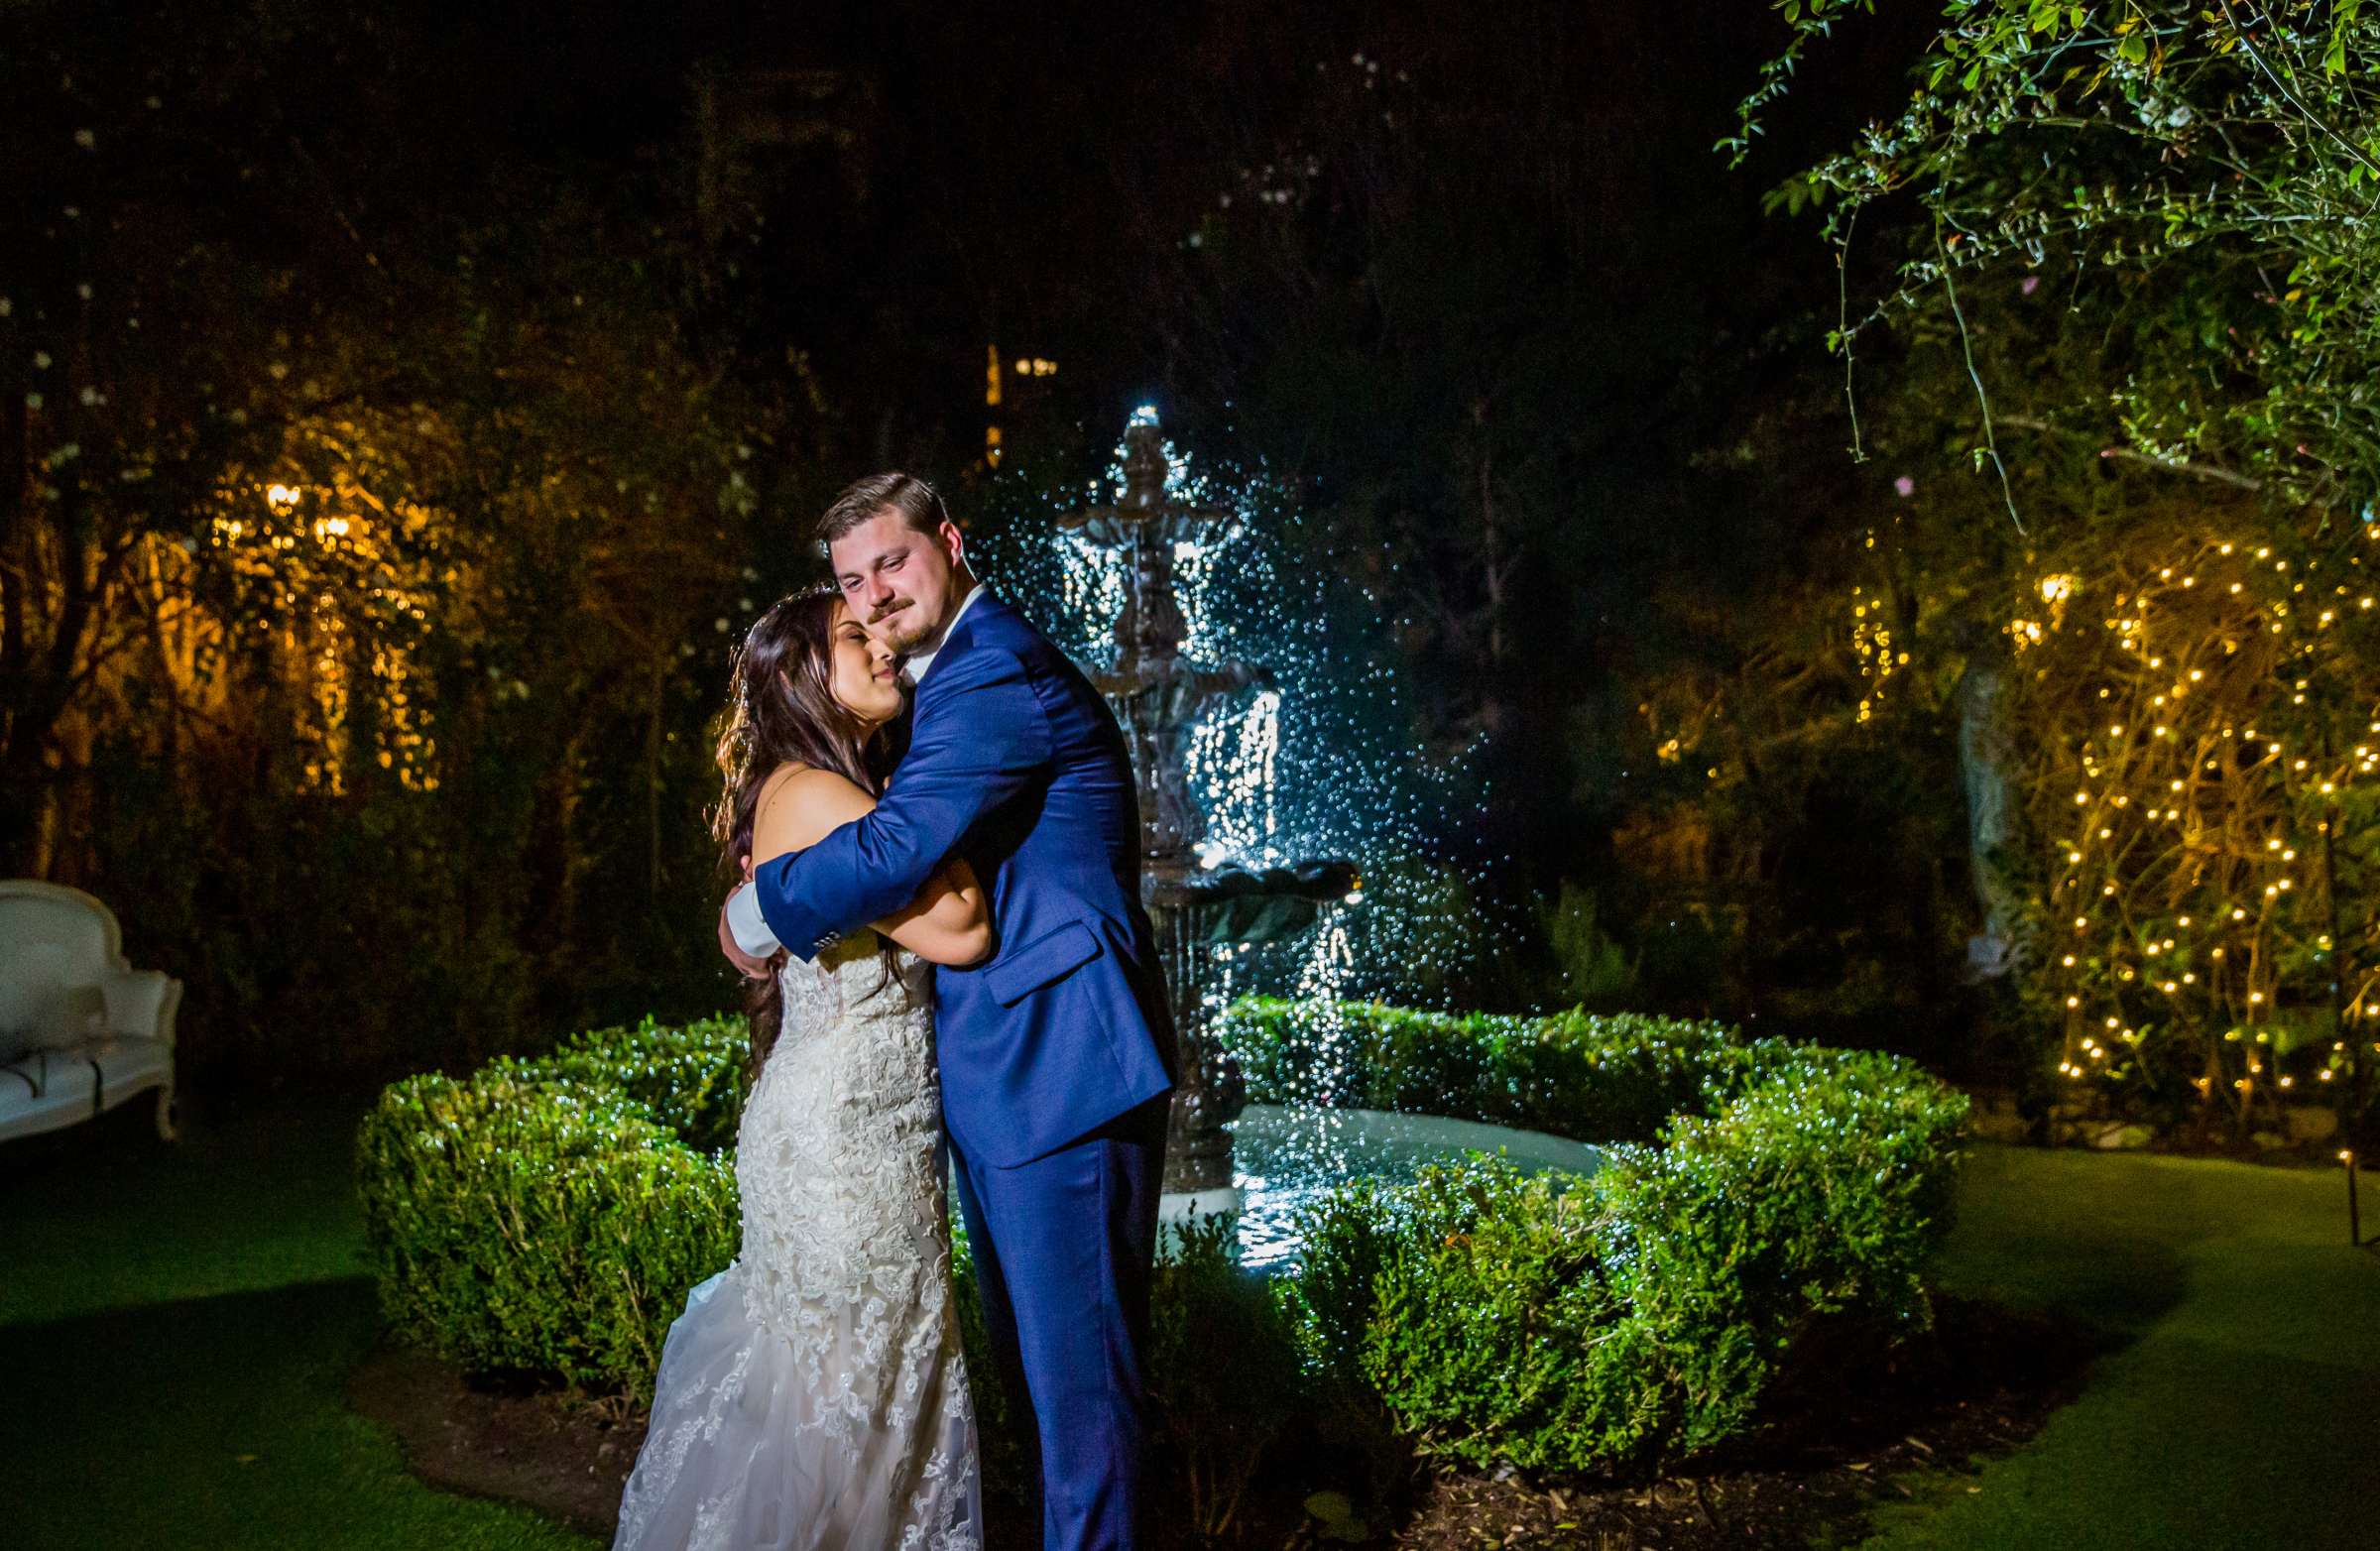 Twin Oaks House & Gardens Wedding Estate Wedding, Stephanie and Ilija Wedding Photo #8 by True Photography